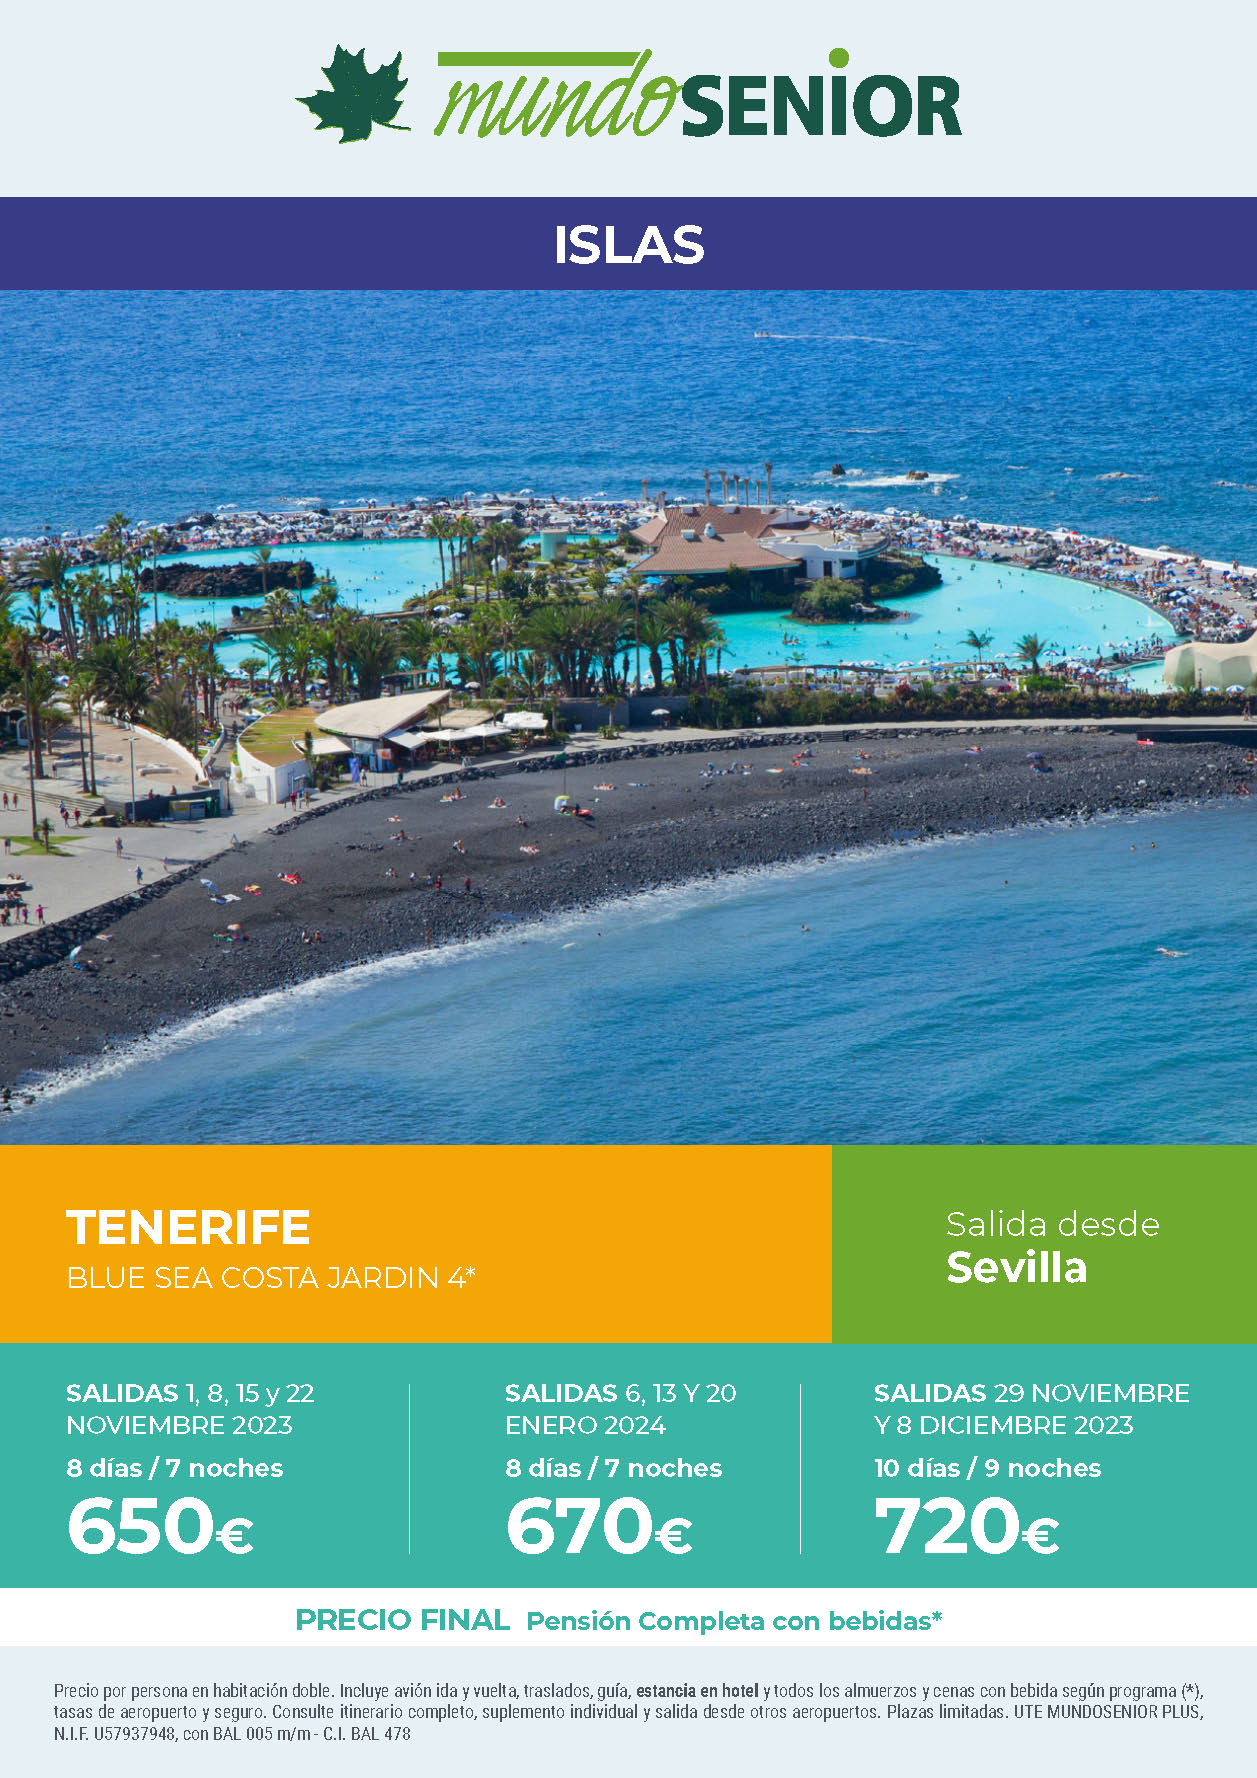 Oferta Mundo Senior Estancia en Tenerife 8 dias hotel 4 estrellas pension completa salidas noviembre diciembre 2023 enero 2024 desde Sevilla